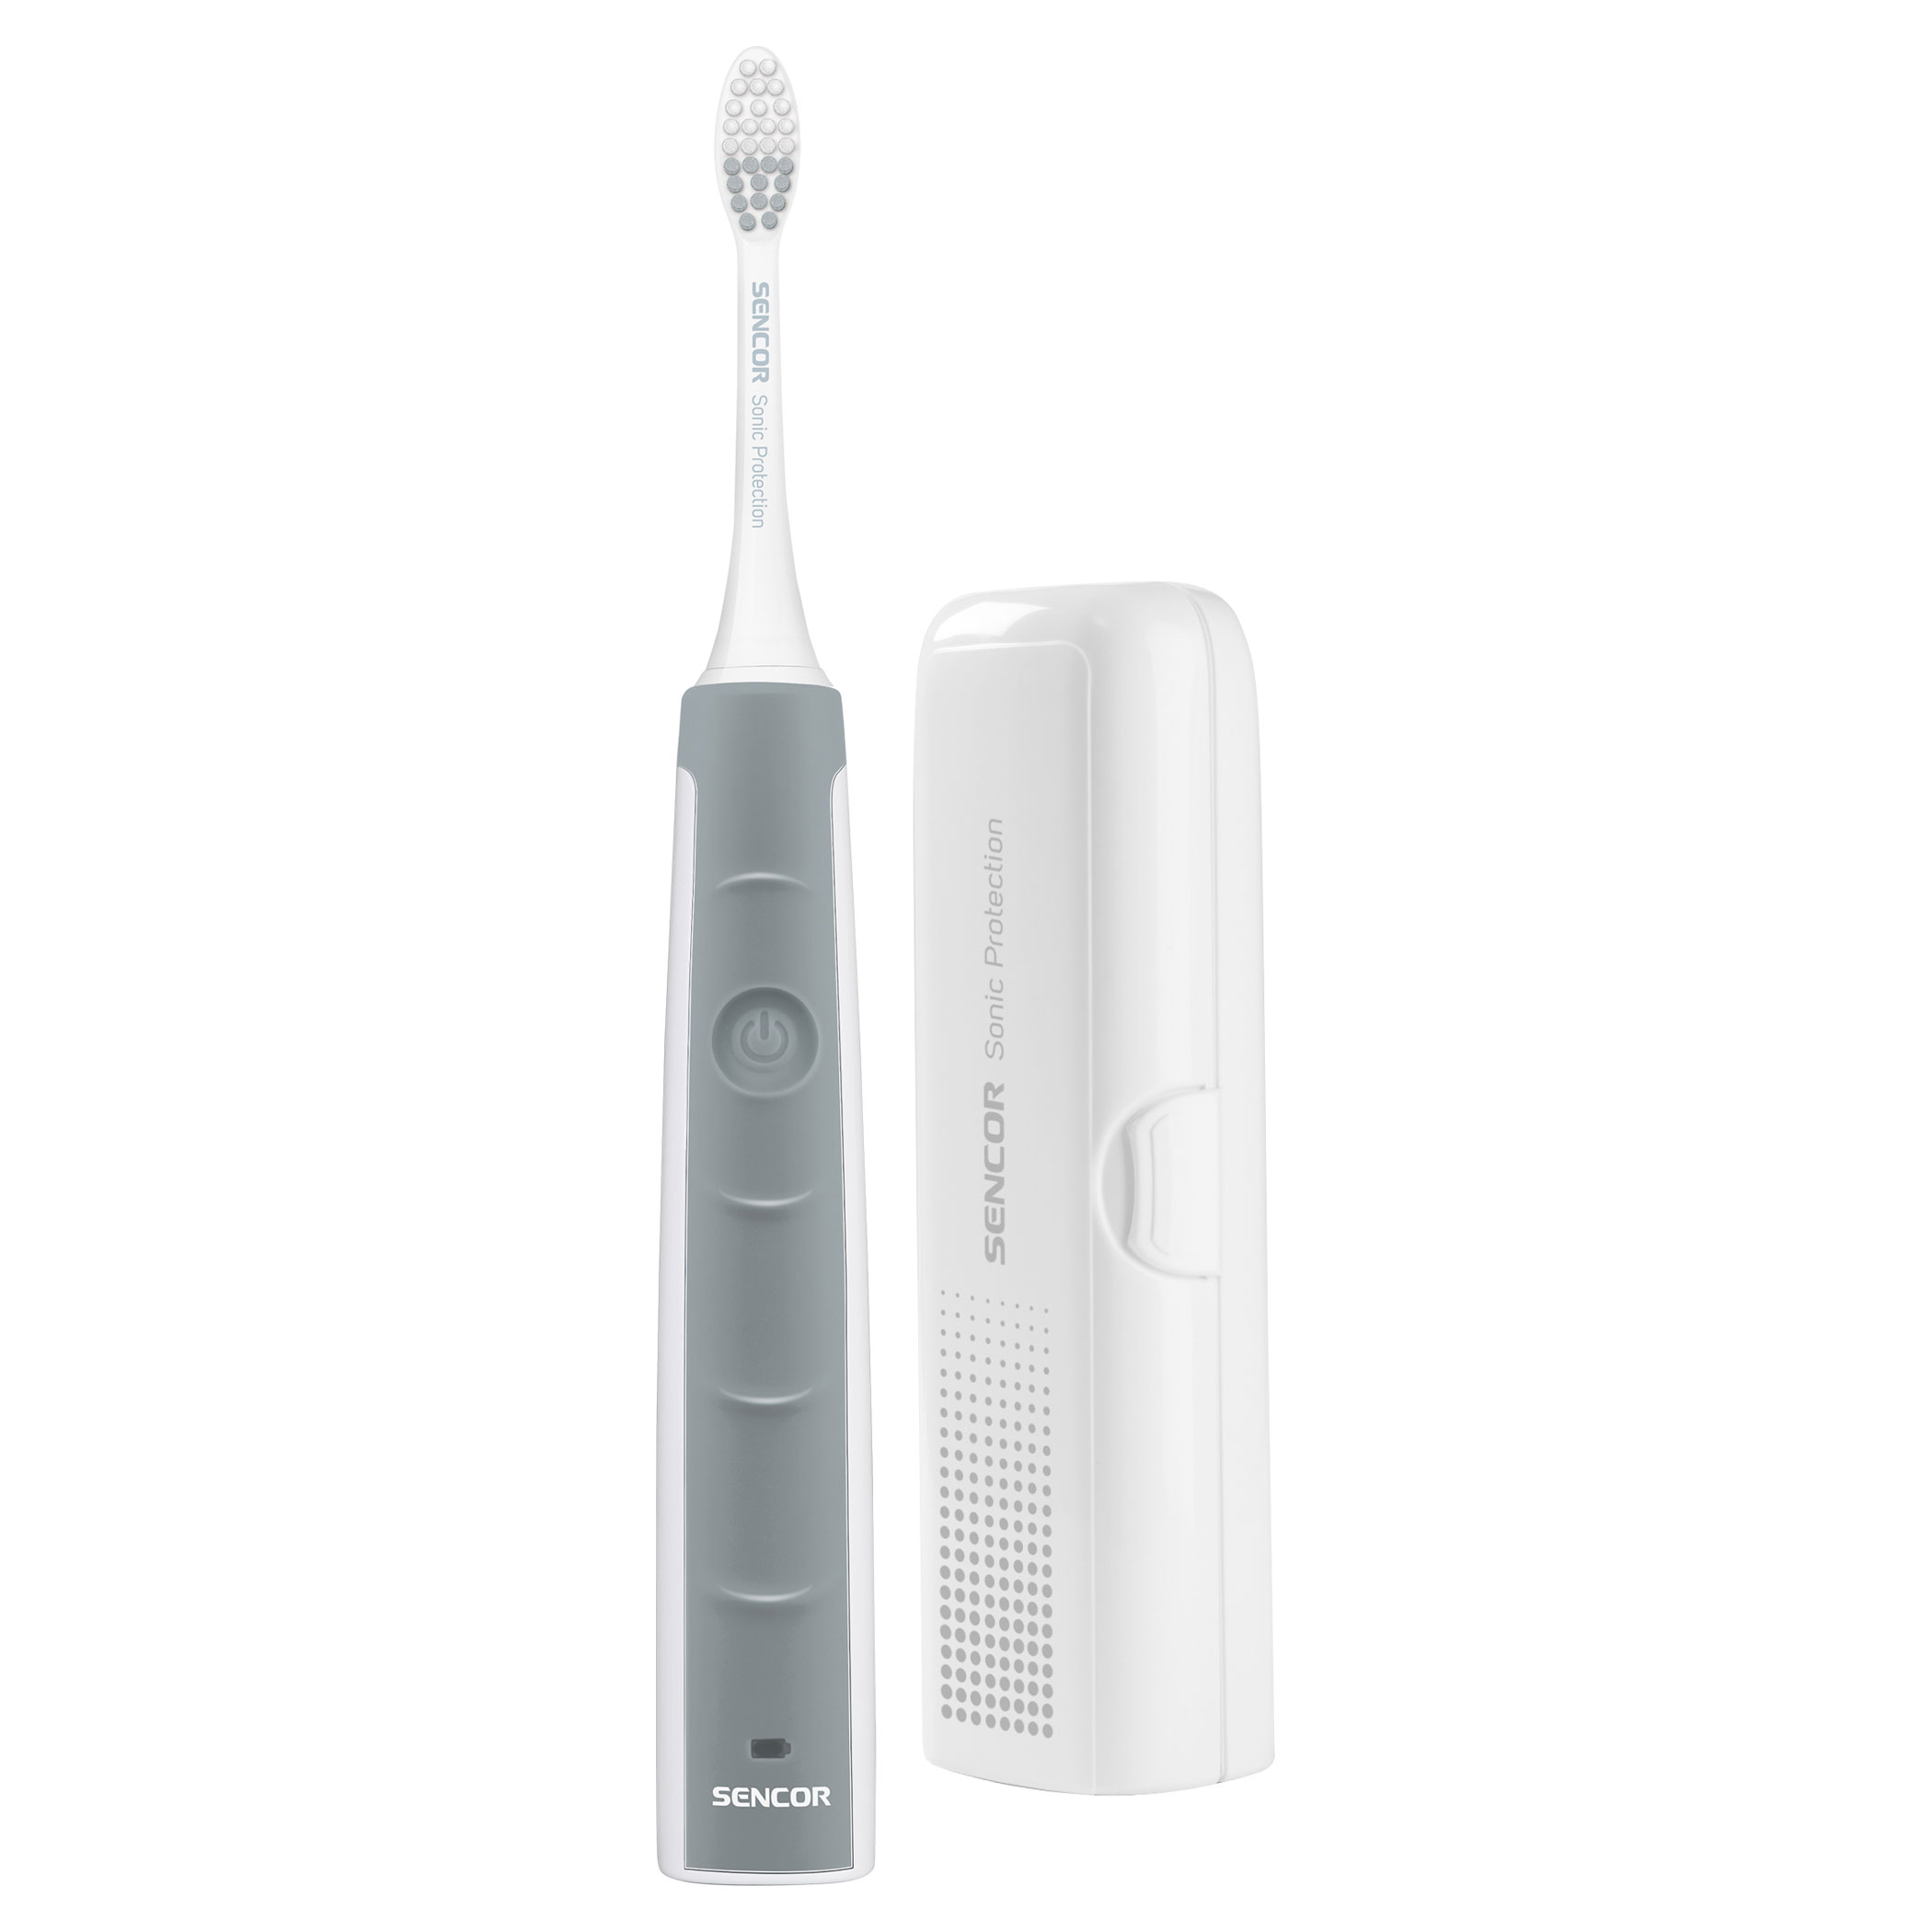 Электрическая зубная щетка Sencor SOC 1100 Silver аккумулятор bl 5c для vertex c305 jinga simple f200n nokia 105 1200 1280 1100 и др